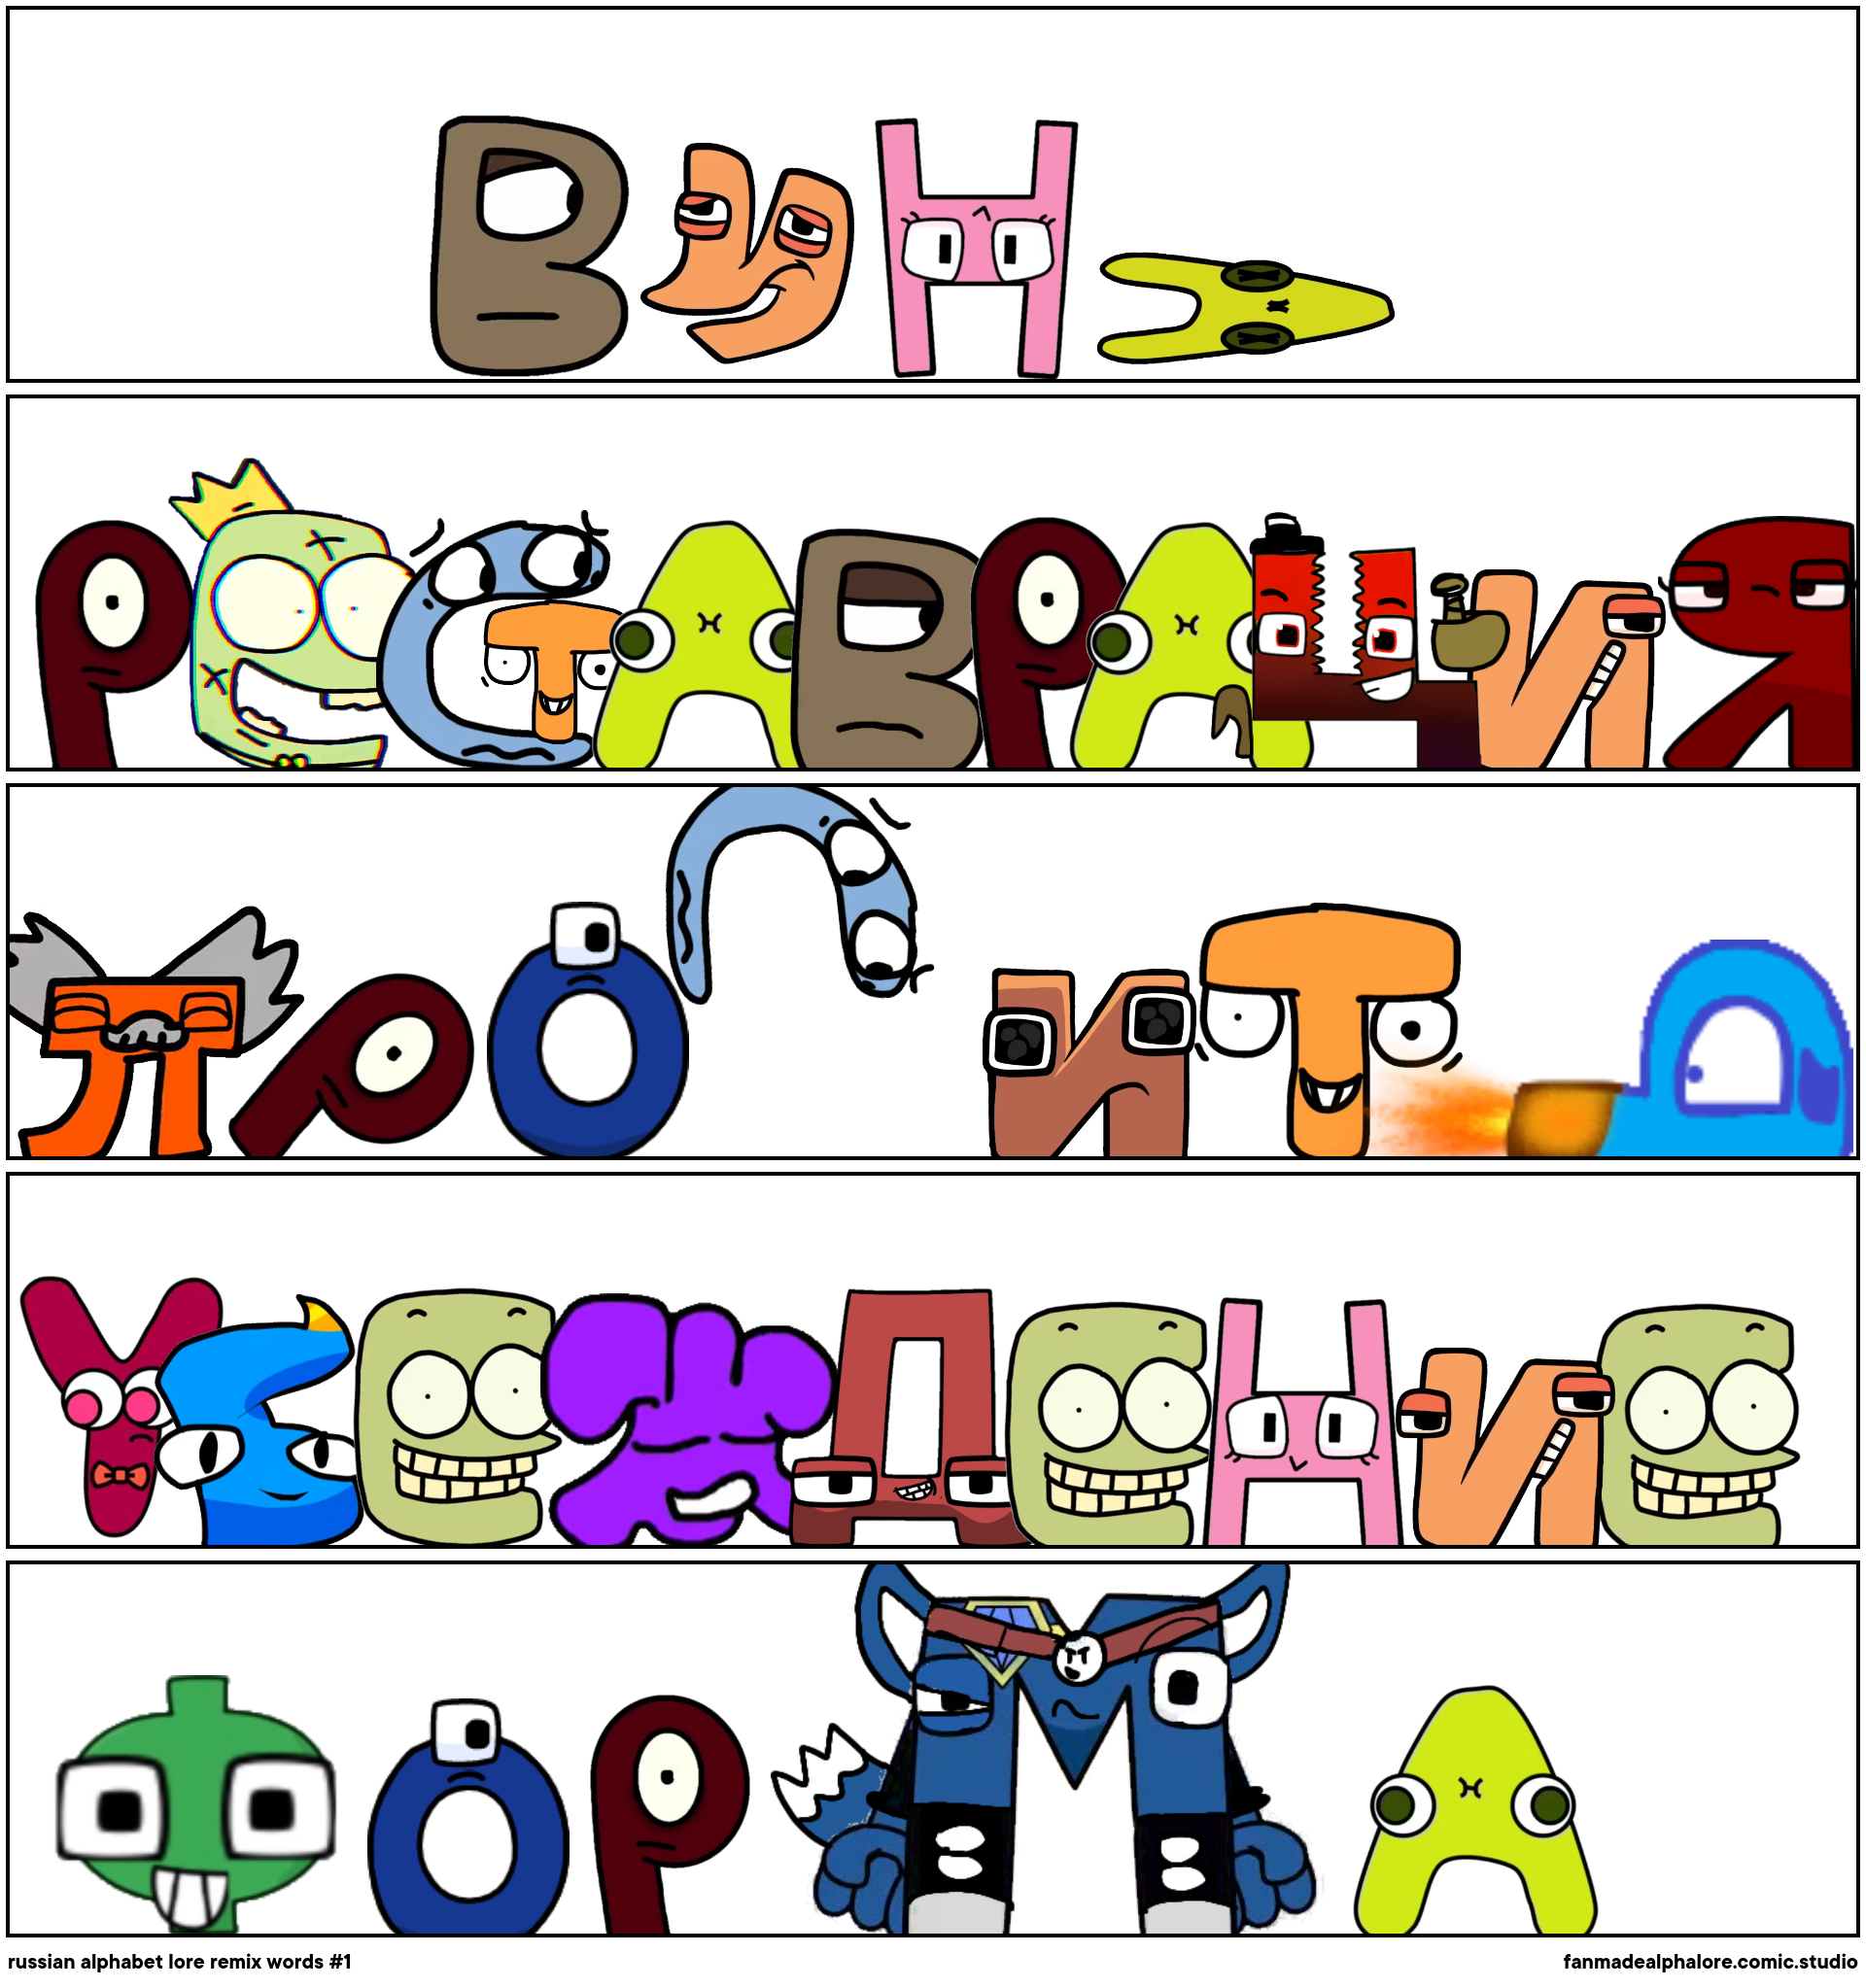 If I Made Russian Alphabet Lore (Ah-Yo) - Comic Studio